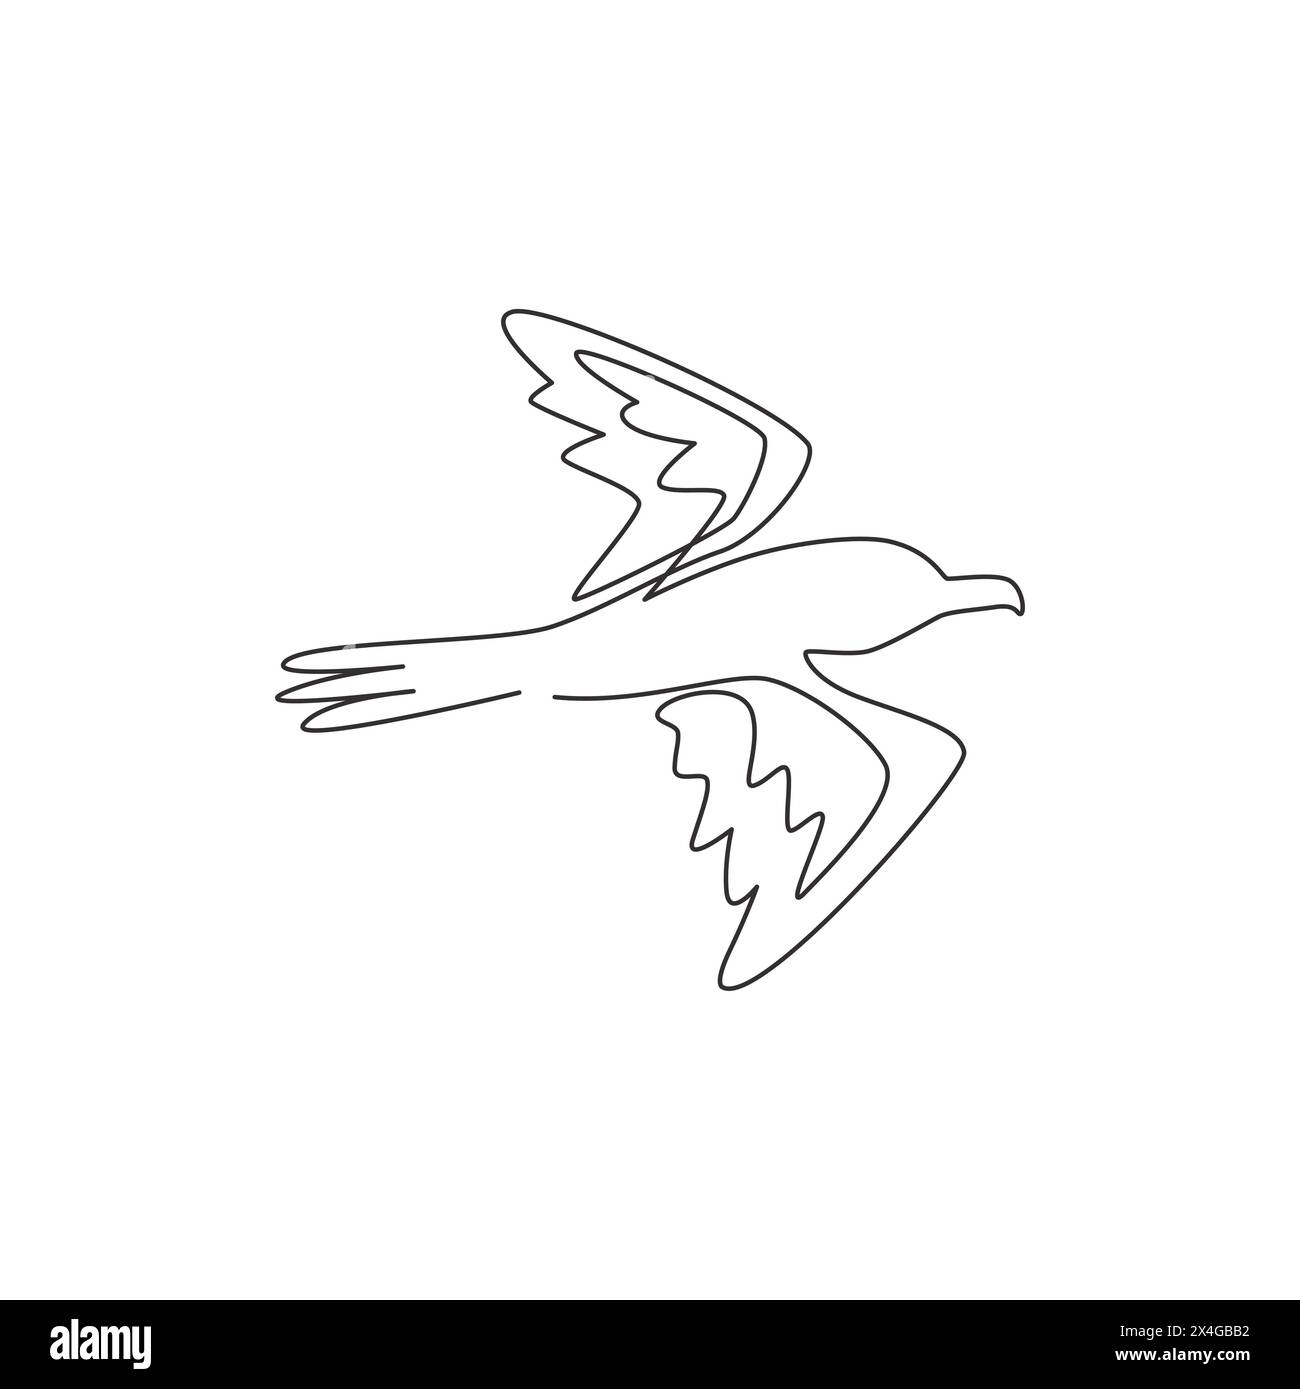 Dessin de ligne continue simple d'albatros mignon pour l'identité de logo d'entreprise. Concept adorable de mascotte d'oiseau de mer pour l'icône de marque de compagnie maritime. Moderne Illustration de Vecteur